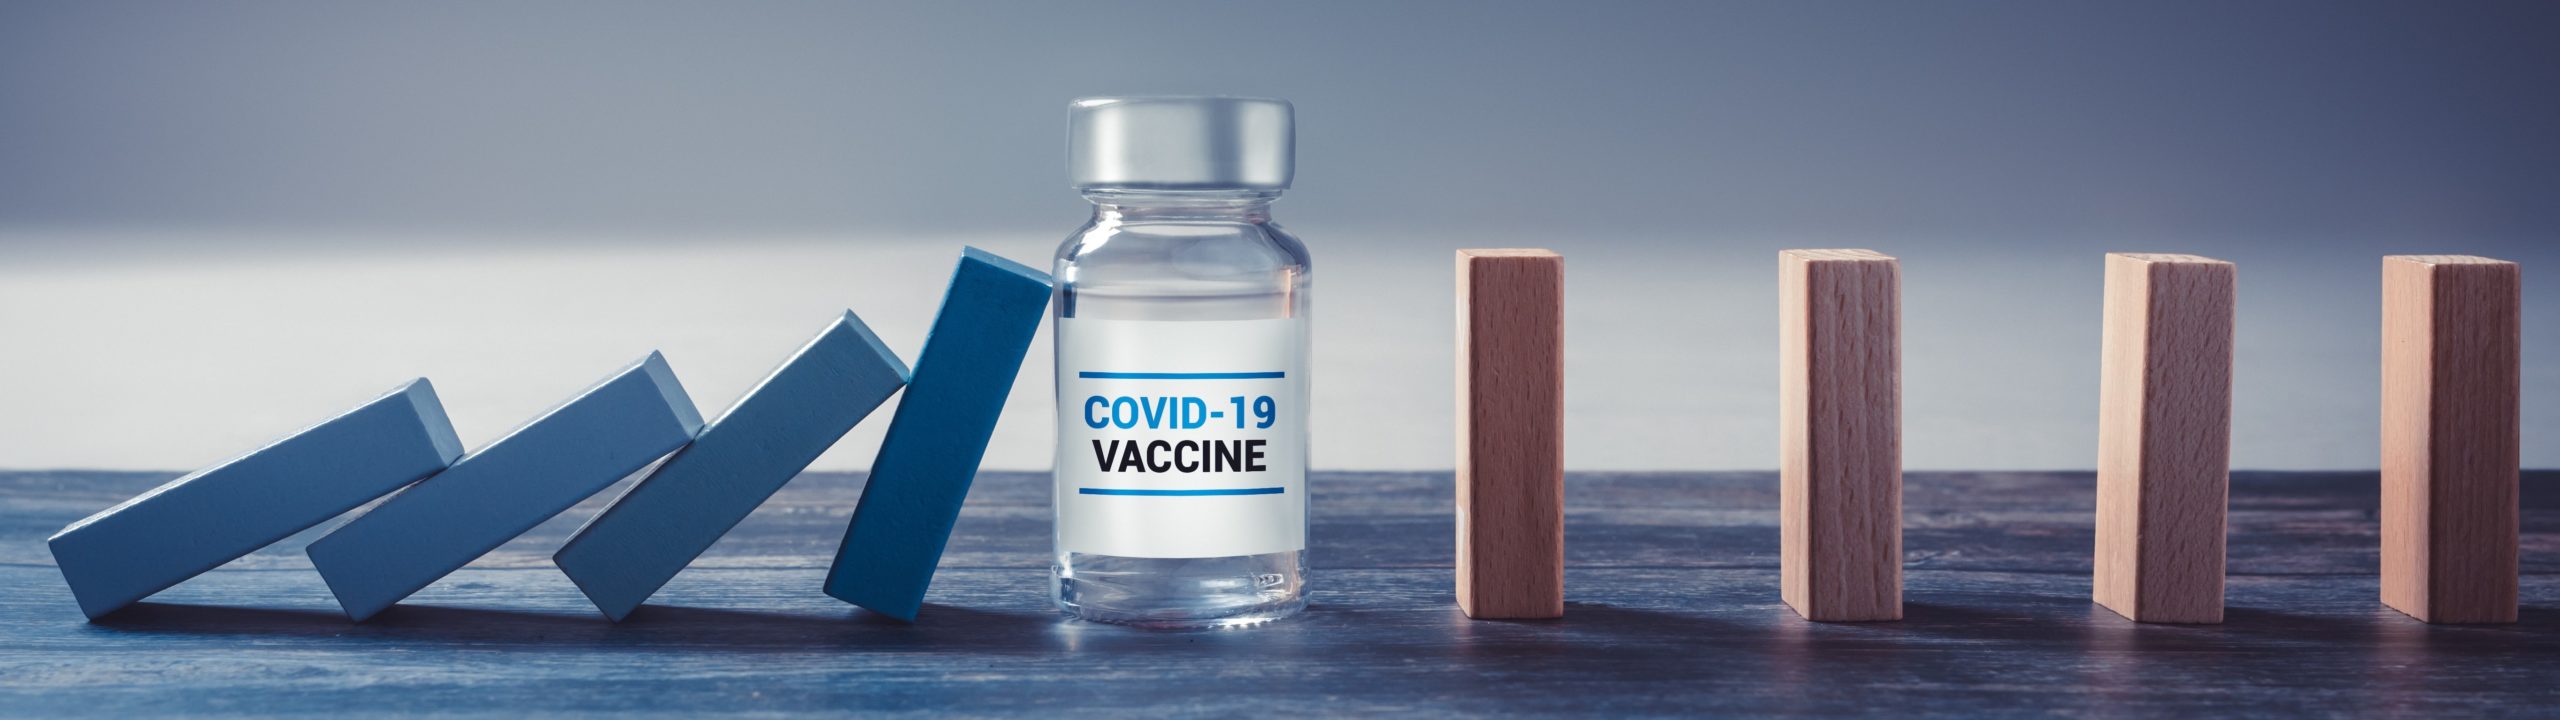 Vaccino COVID 19 - Catena contagio